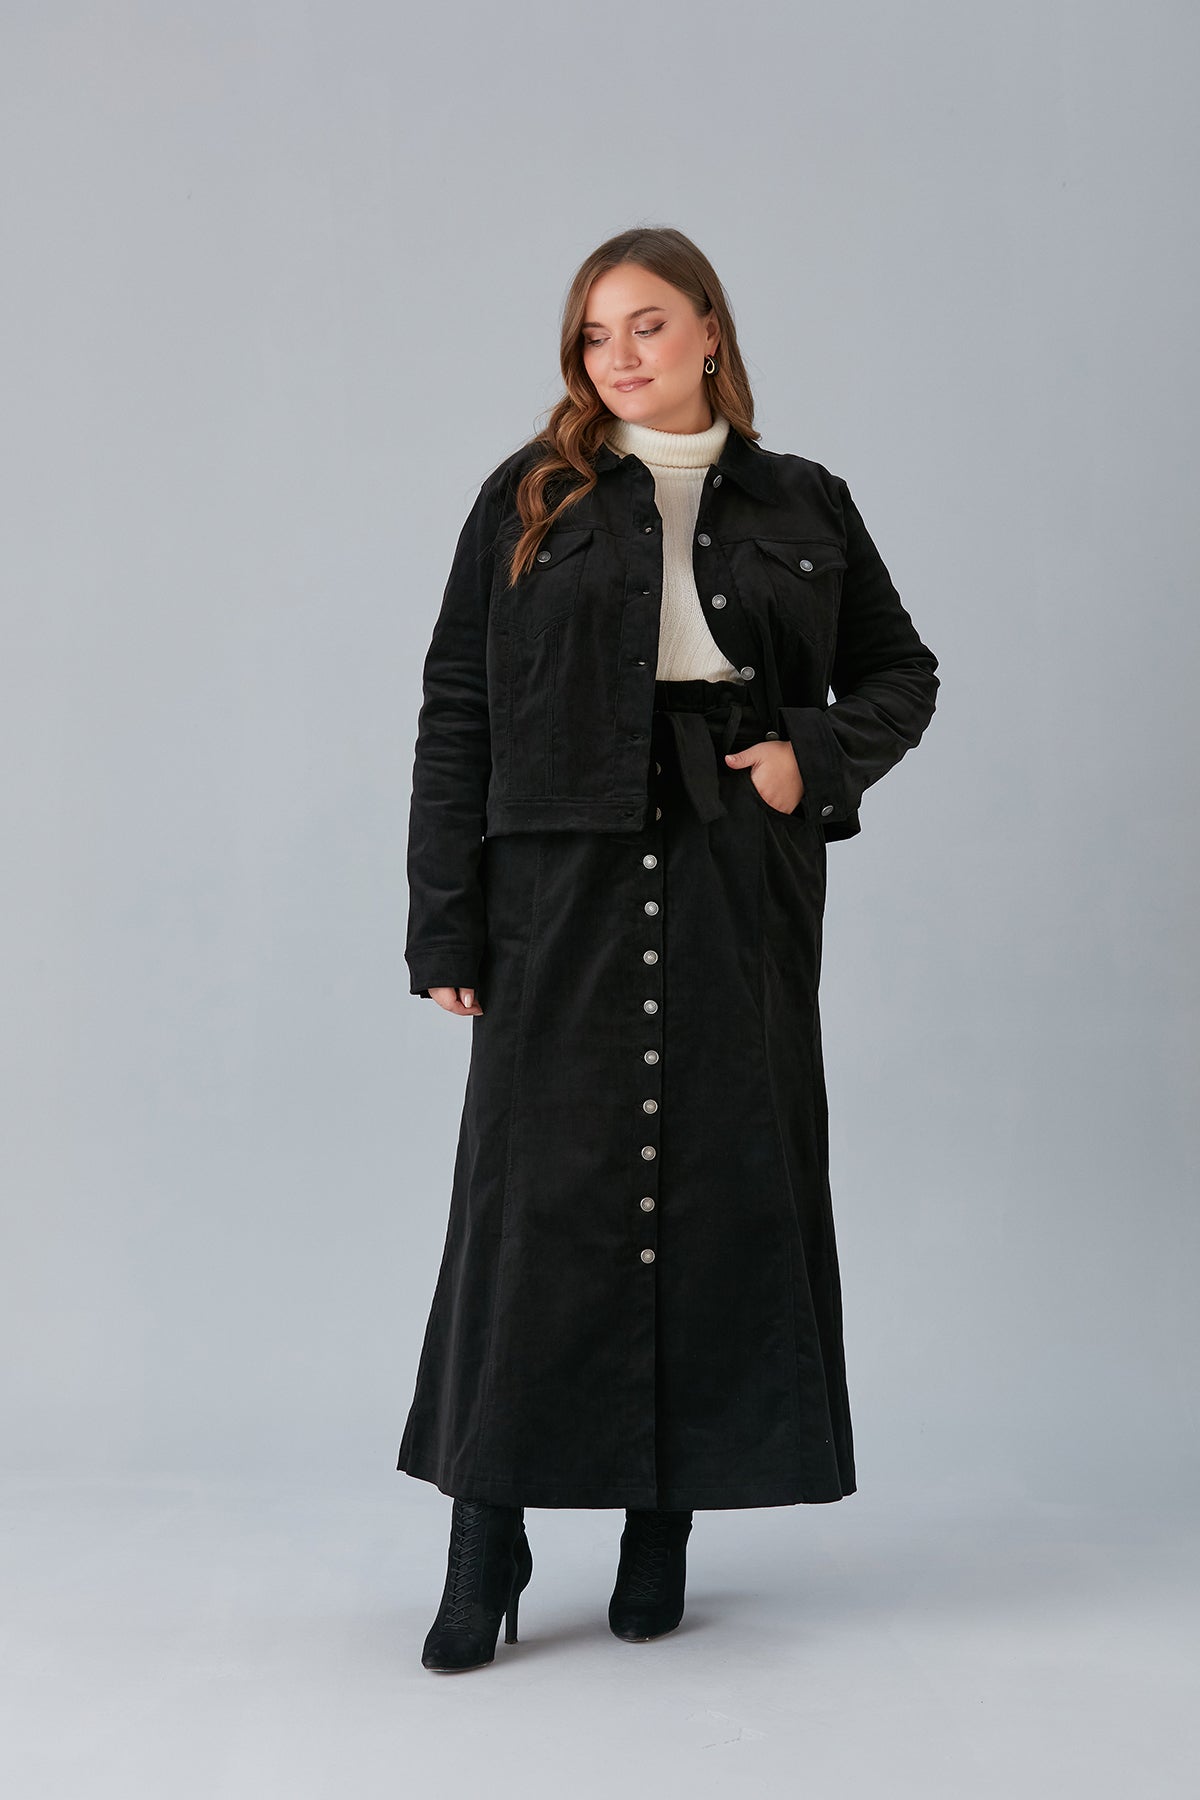 Φούστα κοτλέ με κουμπιά και ελαστική μέση σε μεγάλα μεγέθη  - Μαύρο